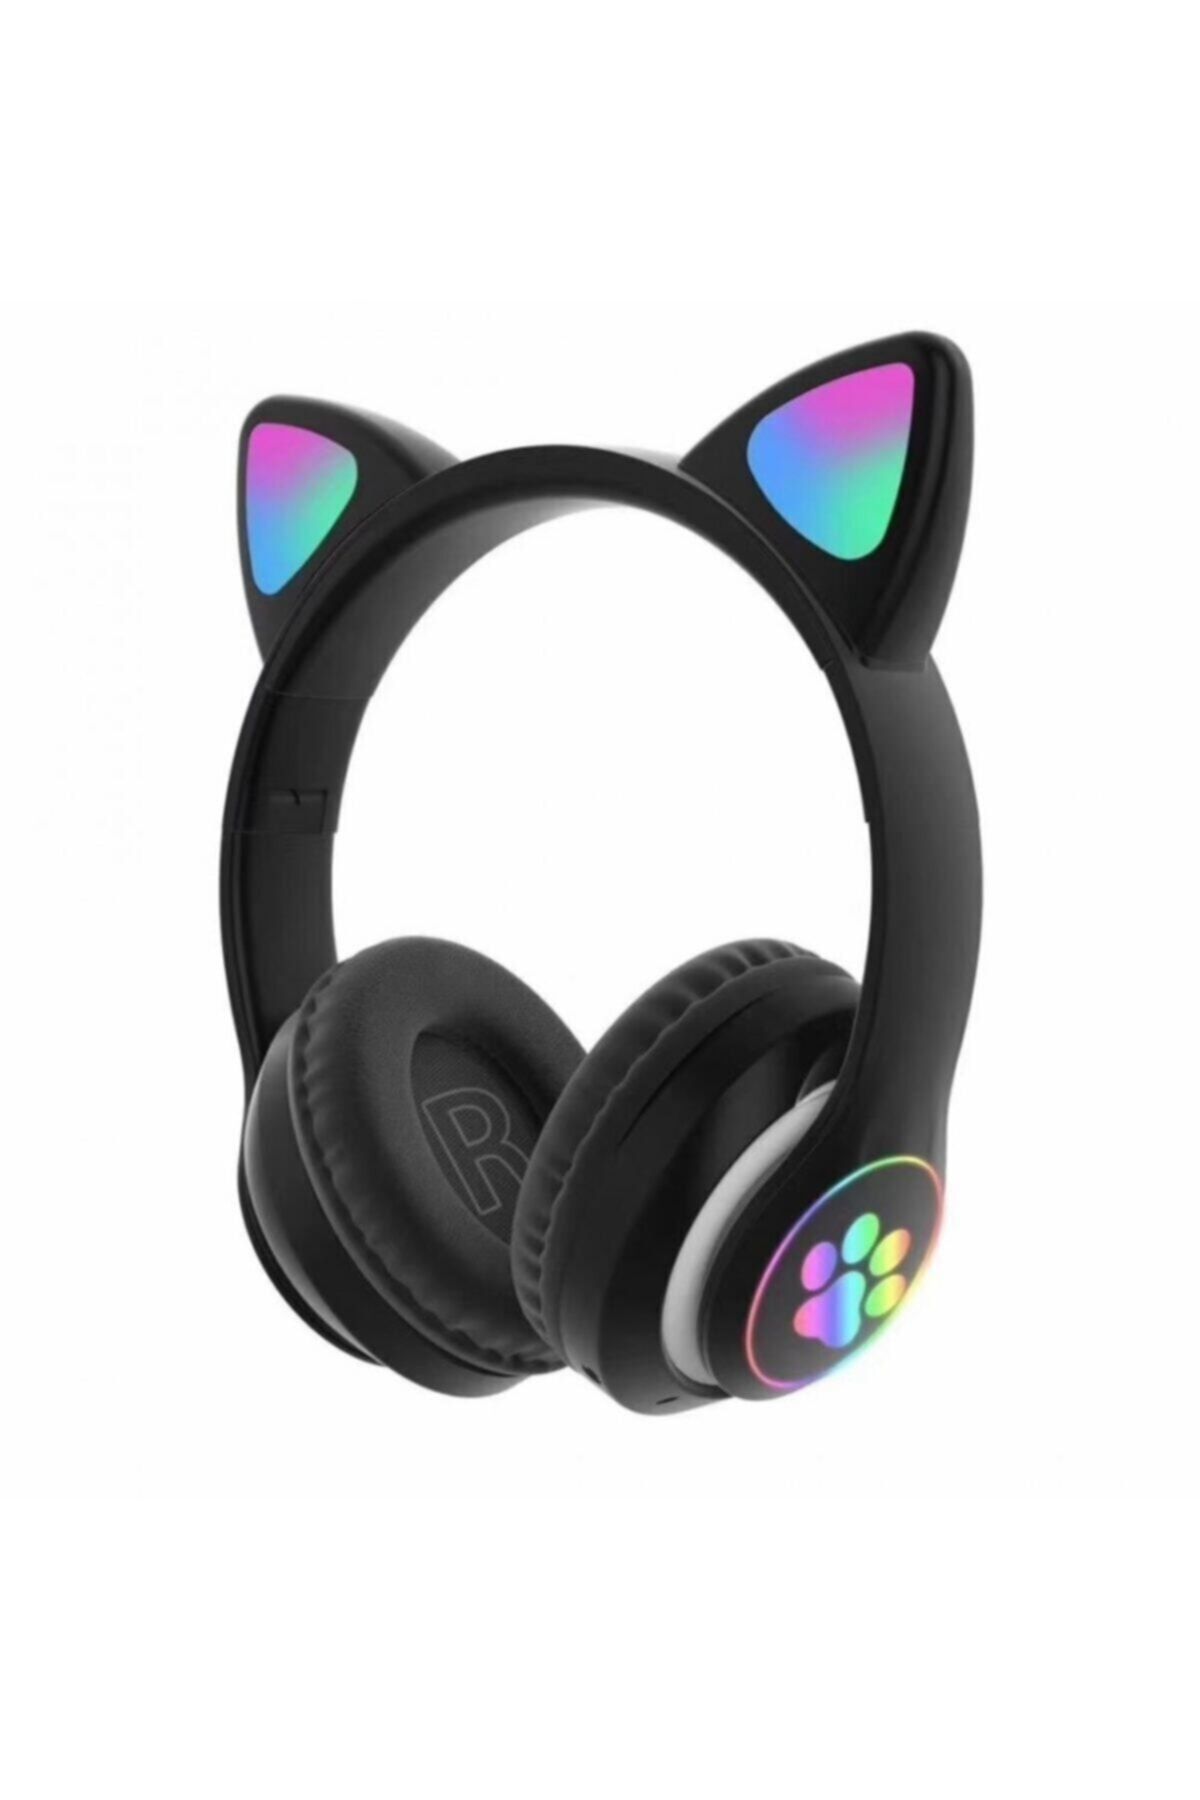 MOBAX Bluetoothlu Işıklı Oyuncu Kulaklığı Eba Uzaktan Eğitim Çocuk Renkli Kulaklık 28 Siyah